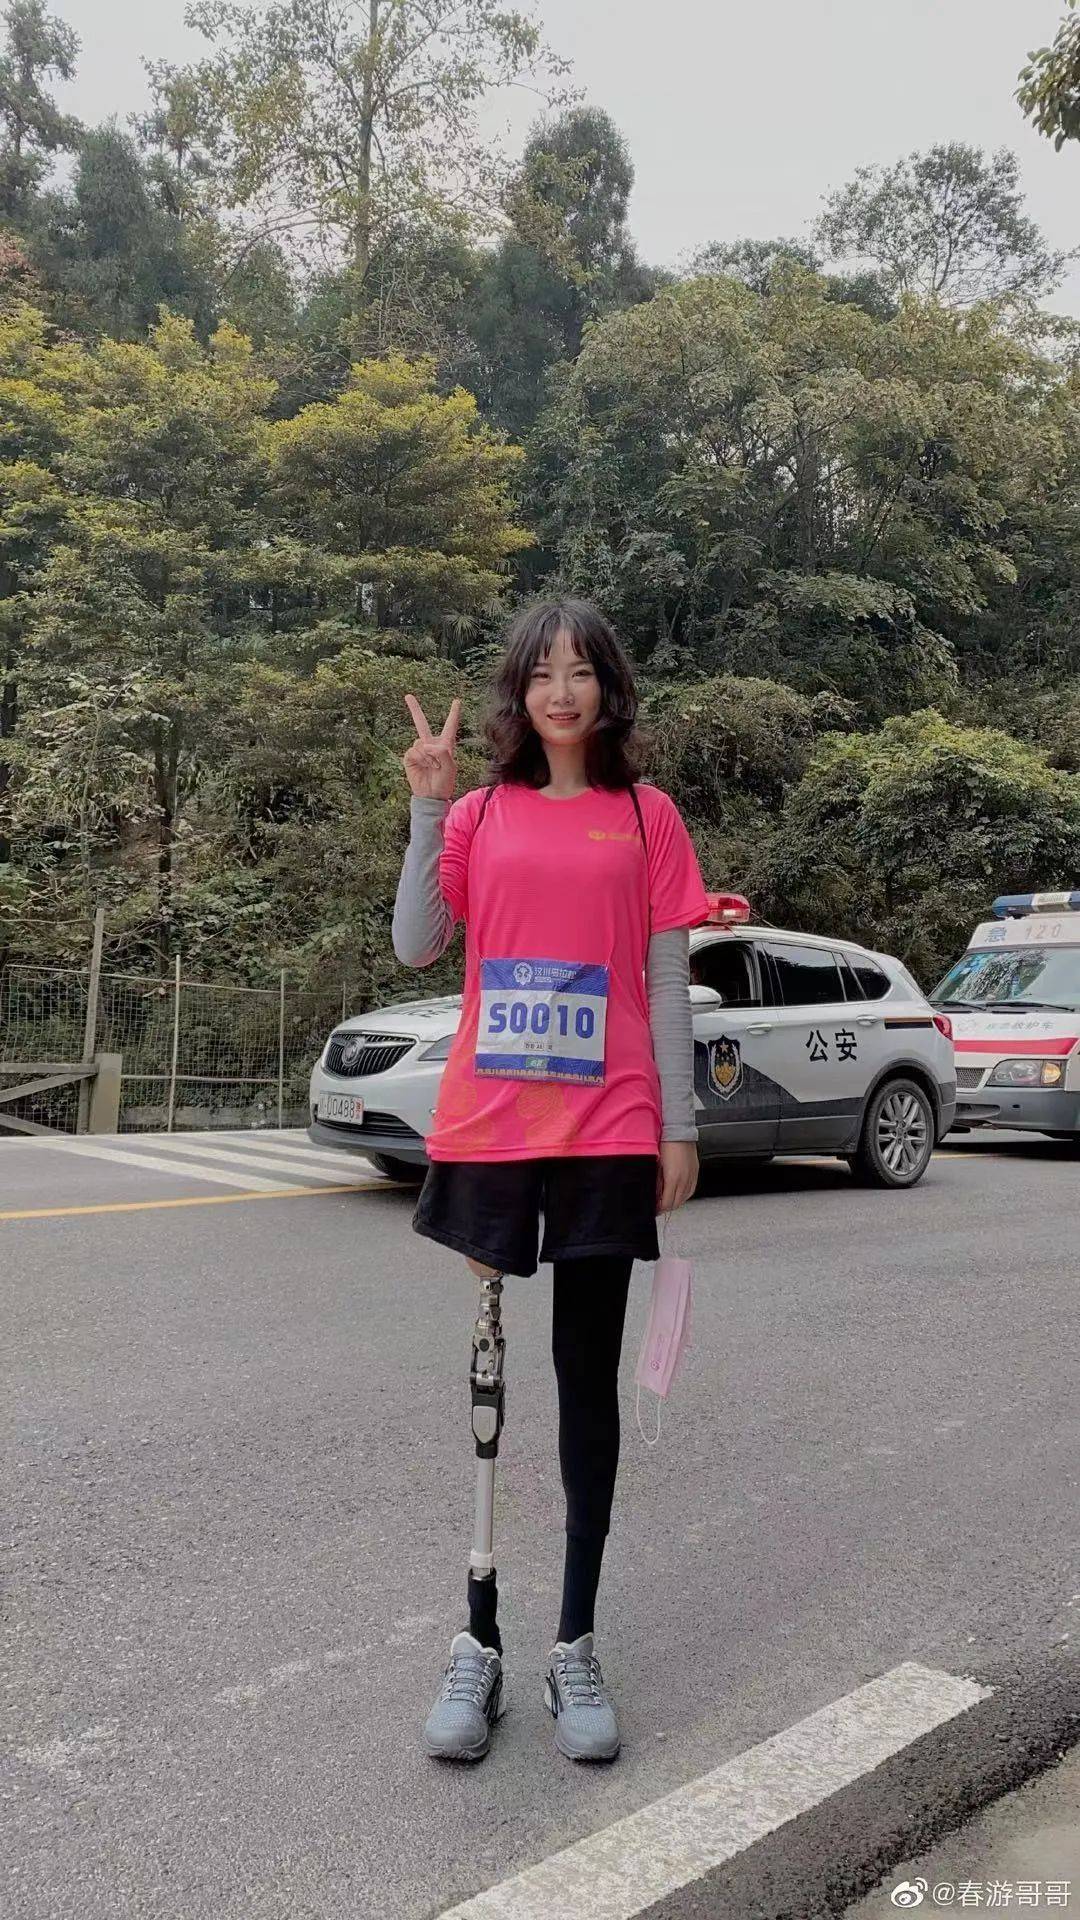 原创超飒那个跑马拉松的汶川地震女孩用机械腿走秀惊艳时装周